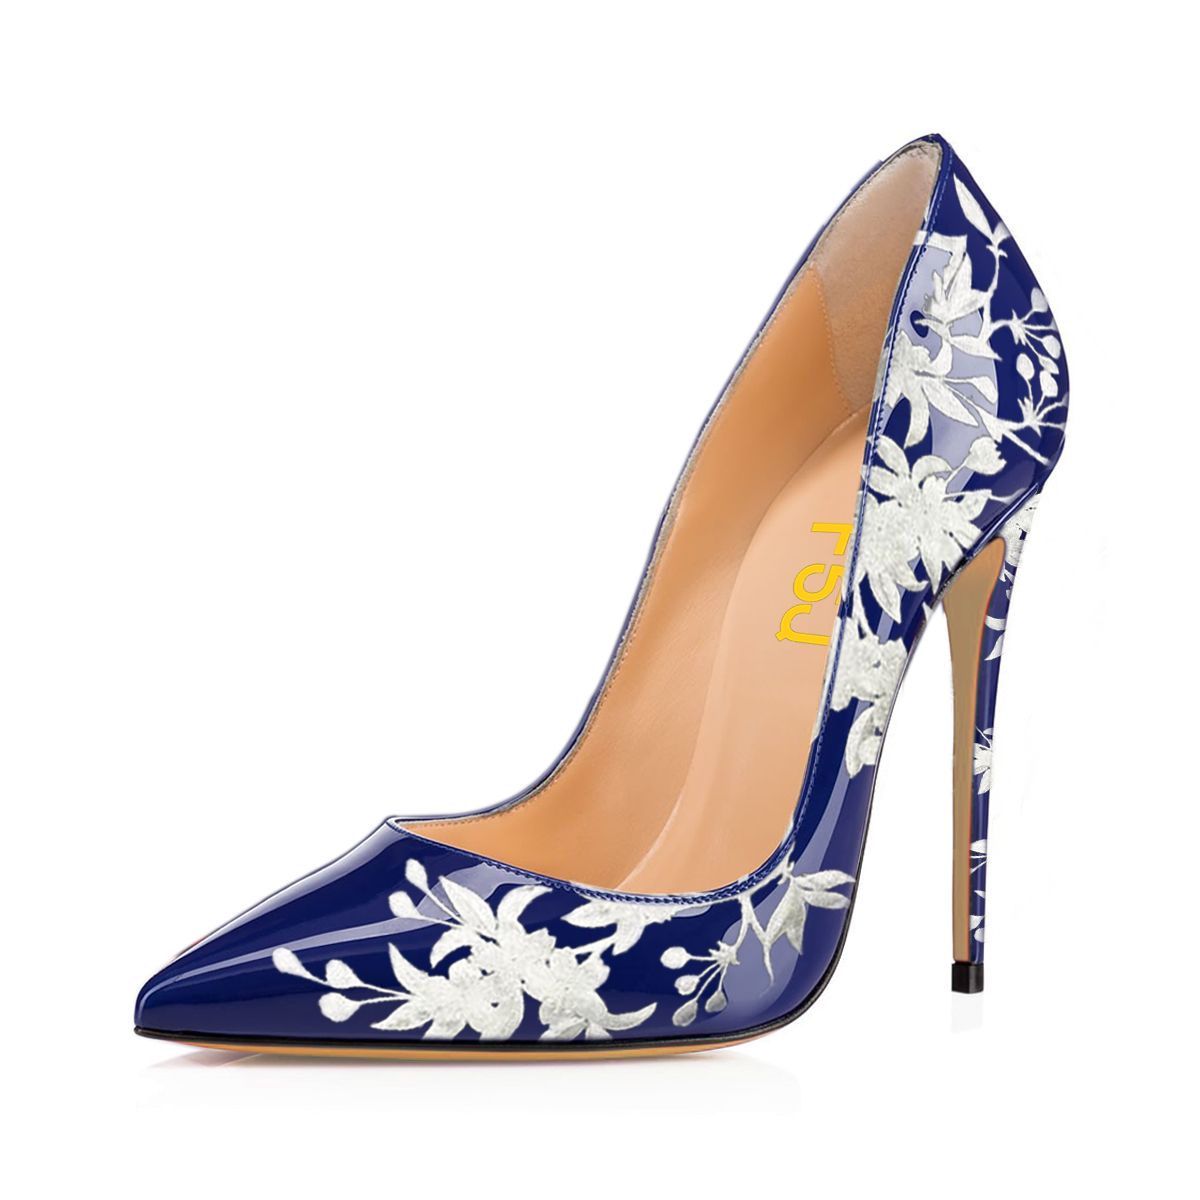 Yellow strap heels | Heels, Shoes heels stilettos, Shoes heels classy